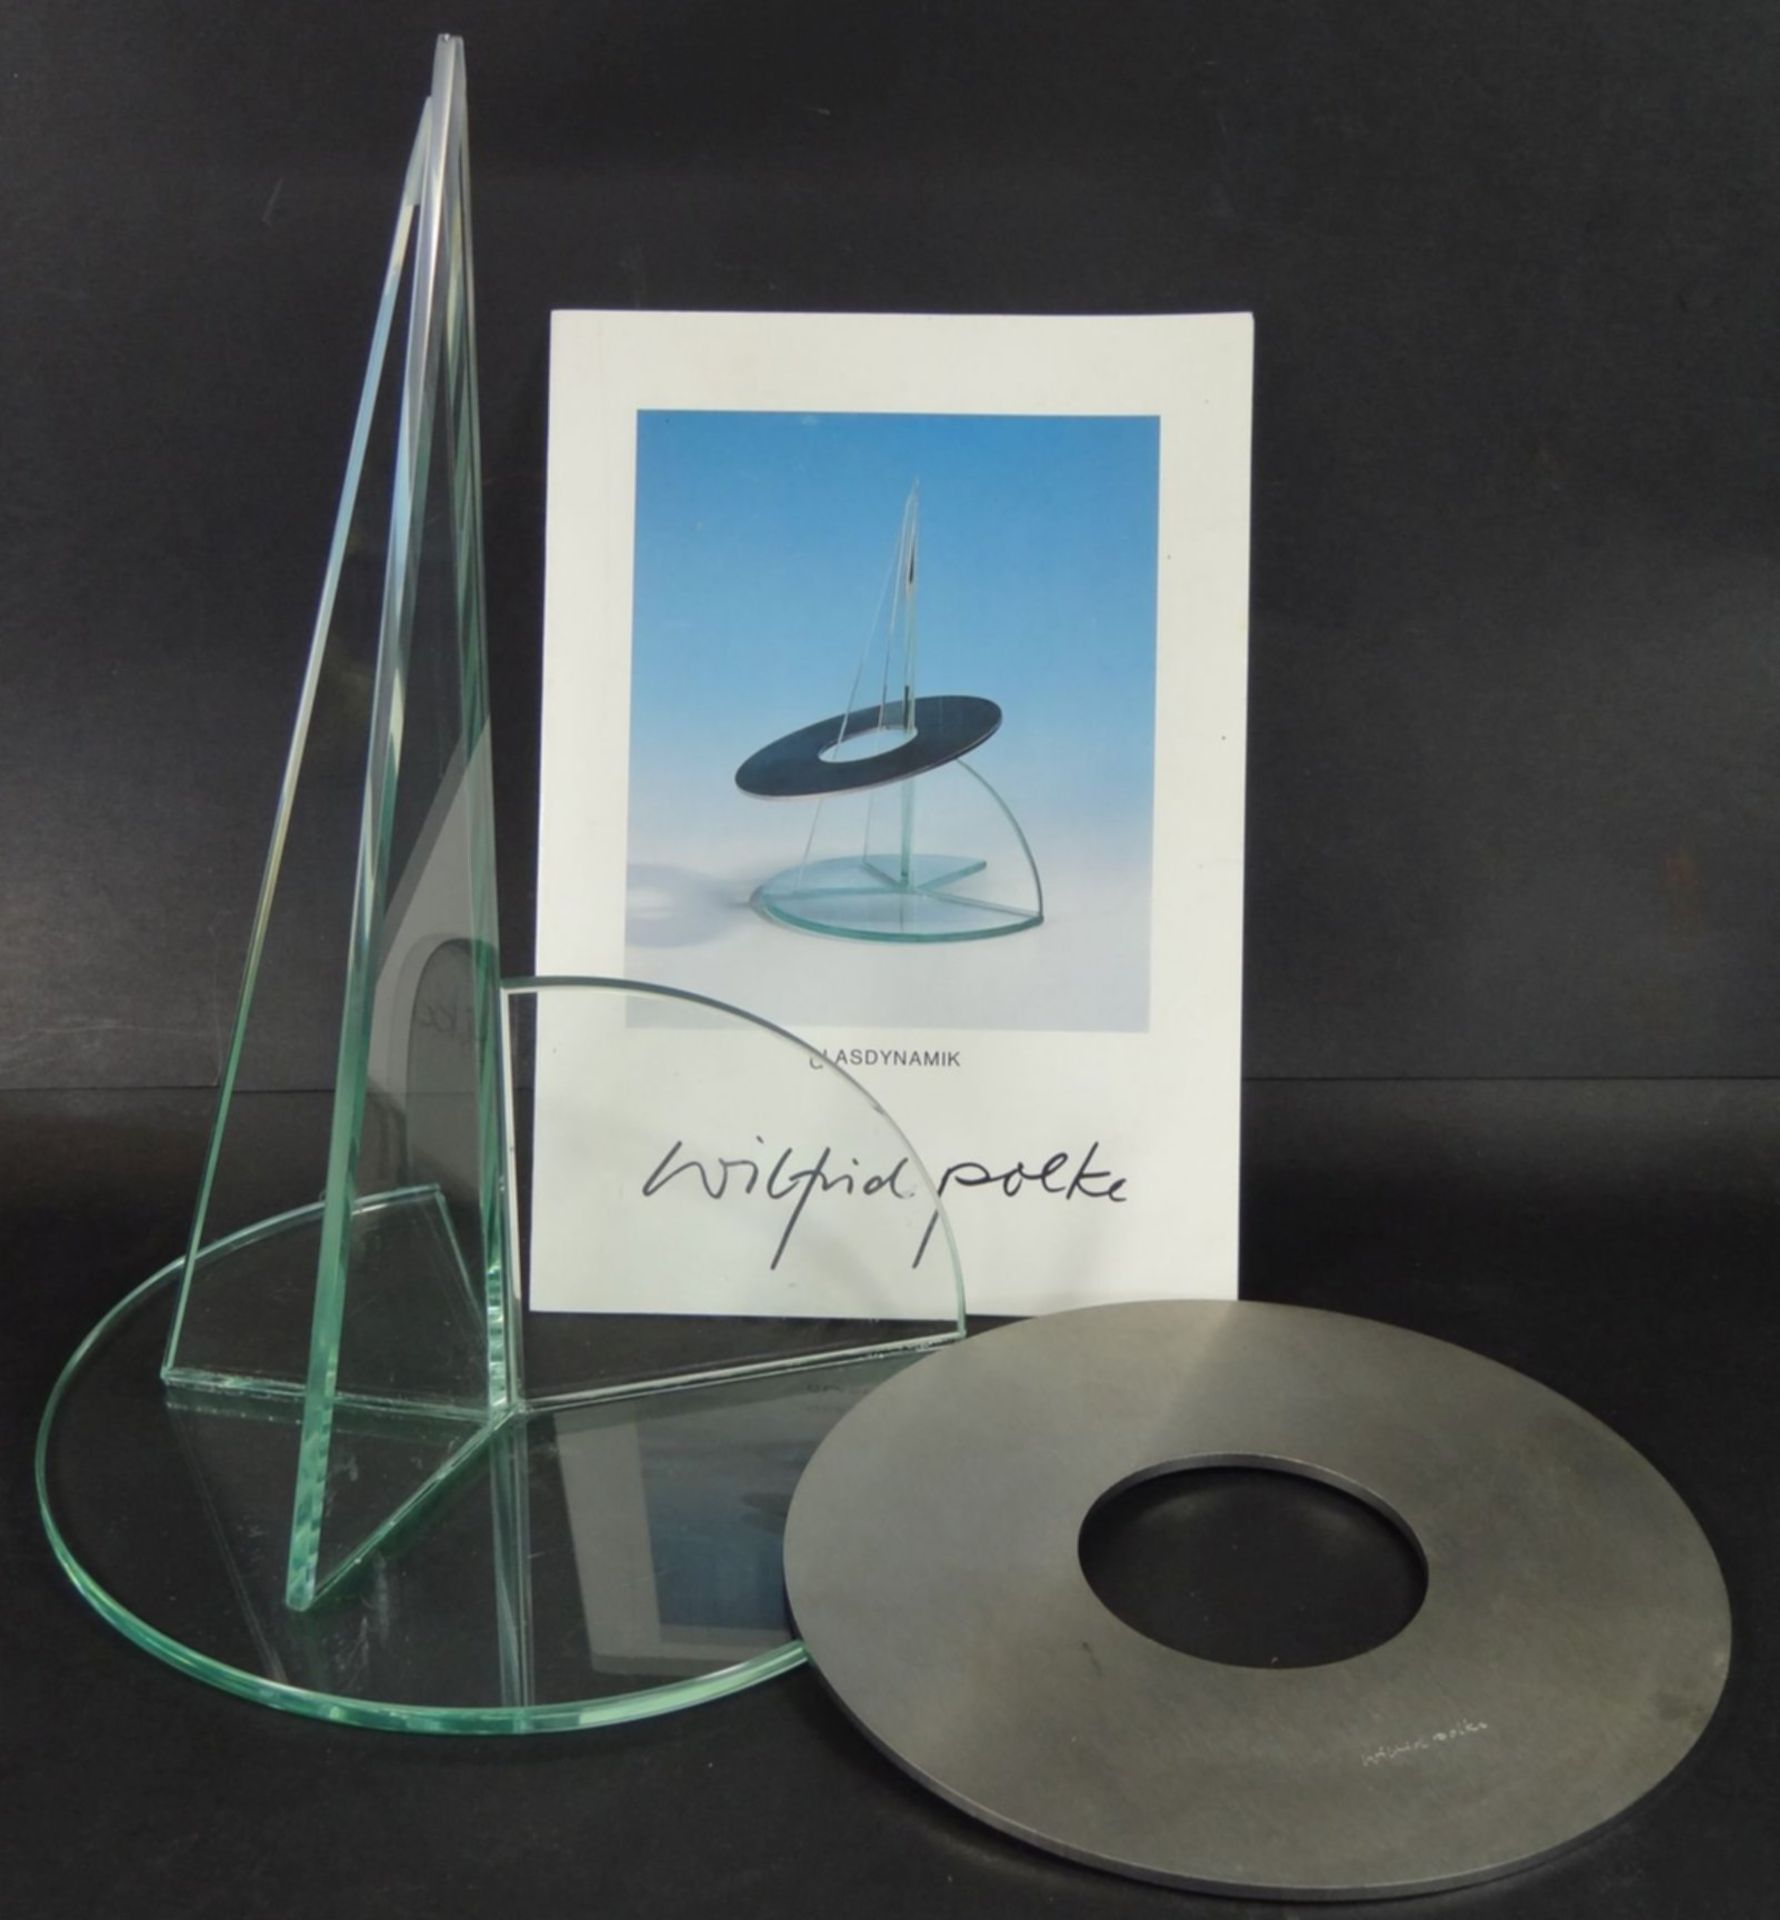 Wilfried Polke (1932-2014), "Glasdynamik", Objekt d'art, auf Metall signiert, anbei Vita, H-27,5 cm, - Bild 4 aus 8